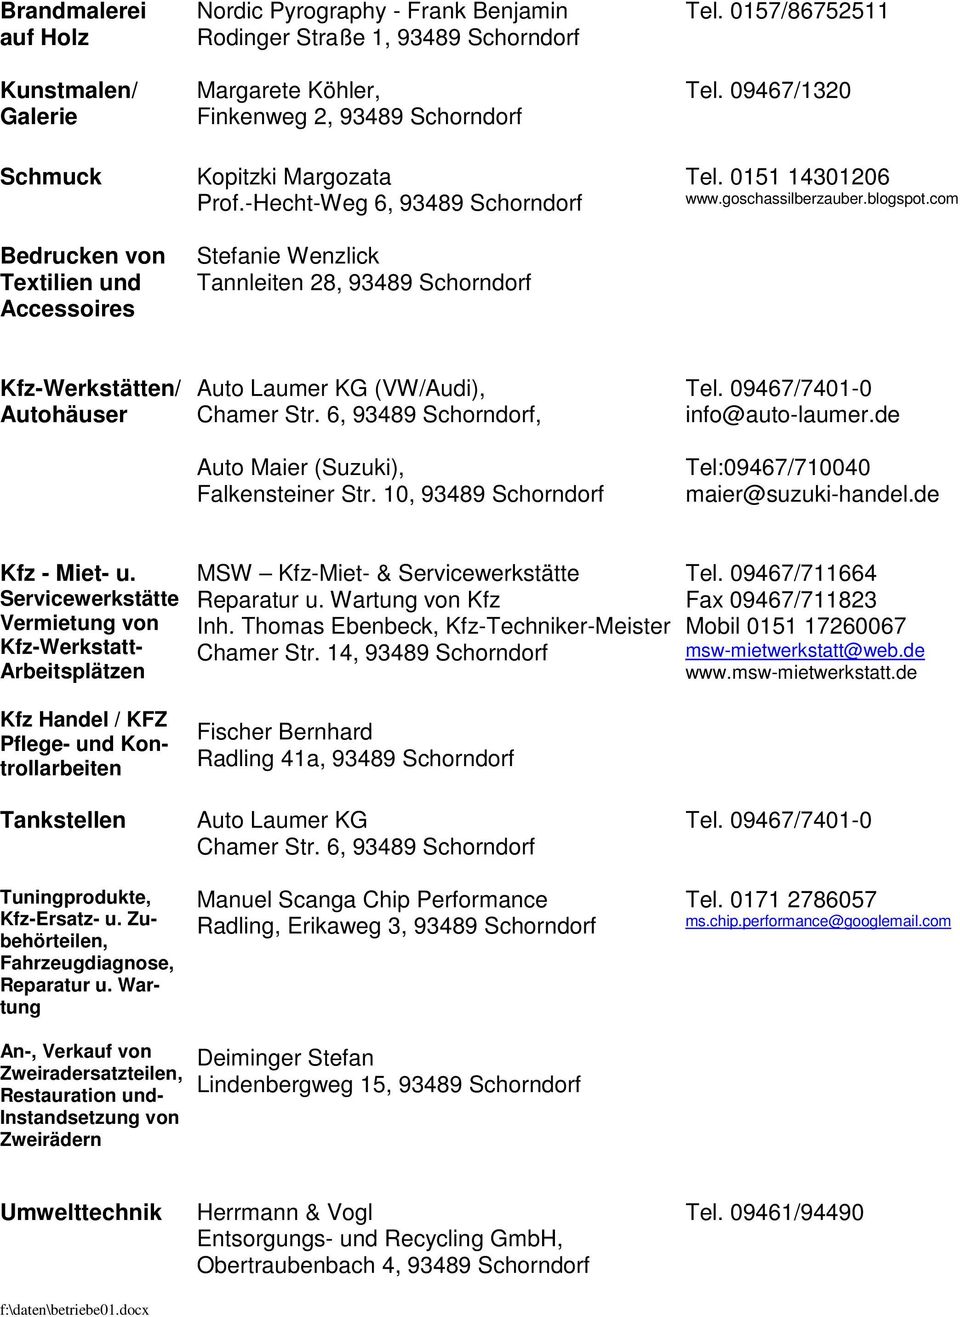 com Kfz-Werkstätten/ Autohäuser Auto Laumer KG (VW/Audi), Chamer Str. 6,, Auto Maier (Suzuki), Falkensteiner Str. 10, Tel. 09467/7401-0 info@auto-laumer.de Tel:09467/710040 maier@suzuki-handel.